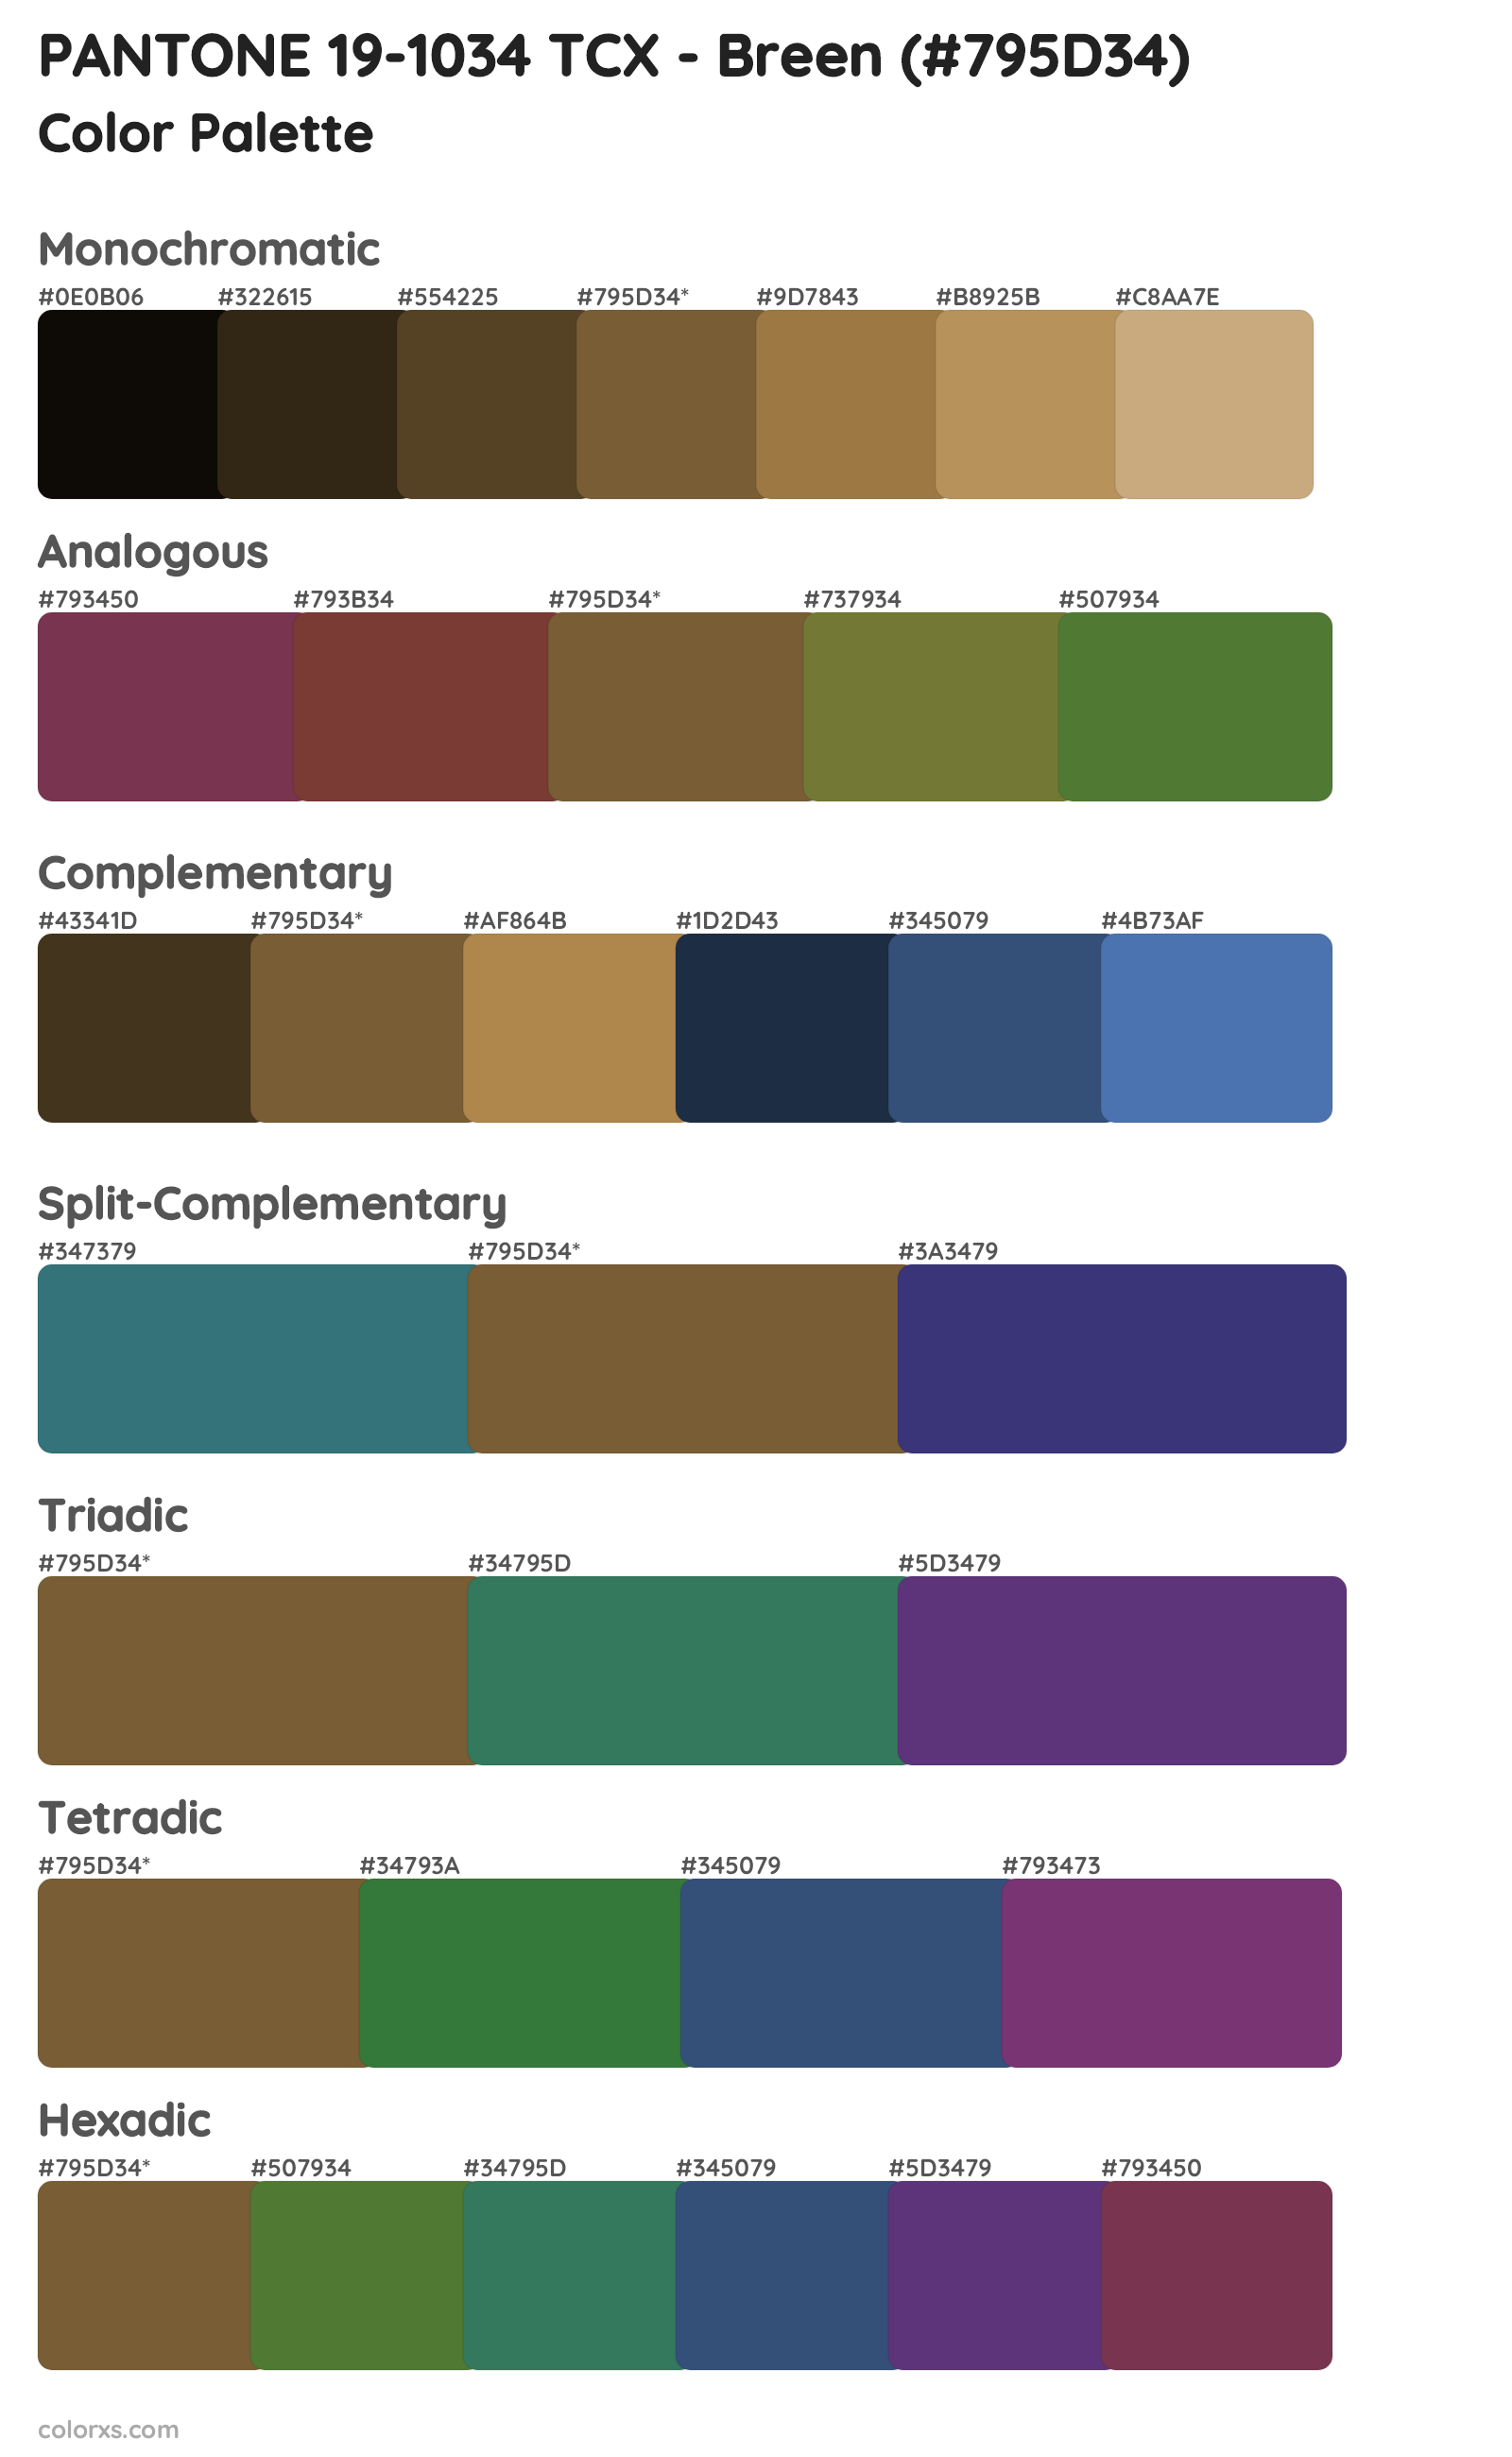 PANTONE 19-1034 TCX - Breen color palettes and color scheme ...